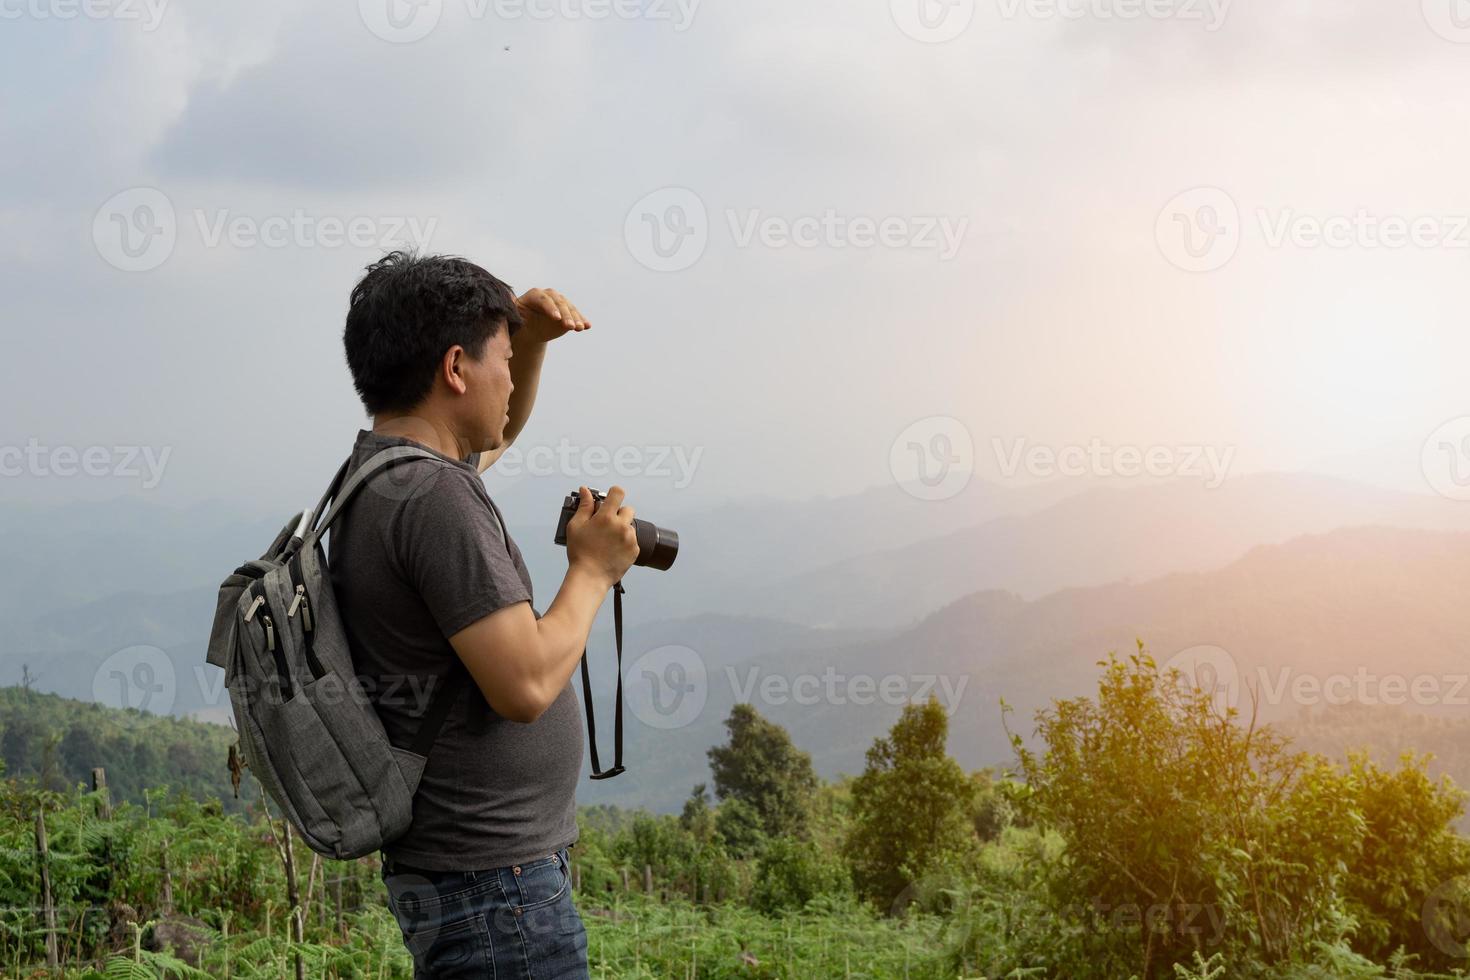 un homme sian avec son sac à dos et son appareil photo voyage seul et regarde de loin, le concept de voyage et d'environnement dans la nature, l'espace de copie pour le texte individuel